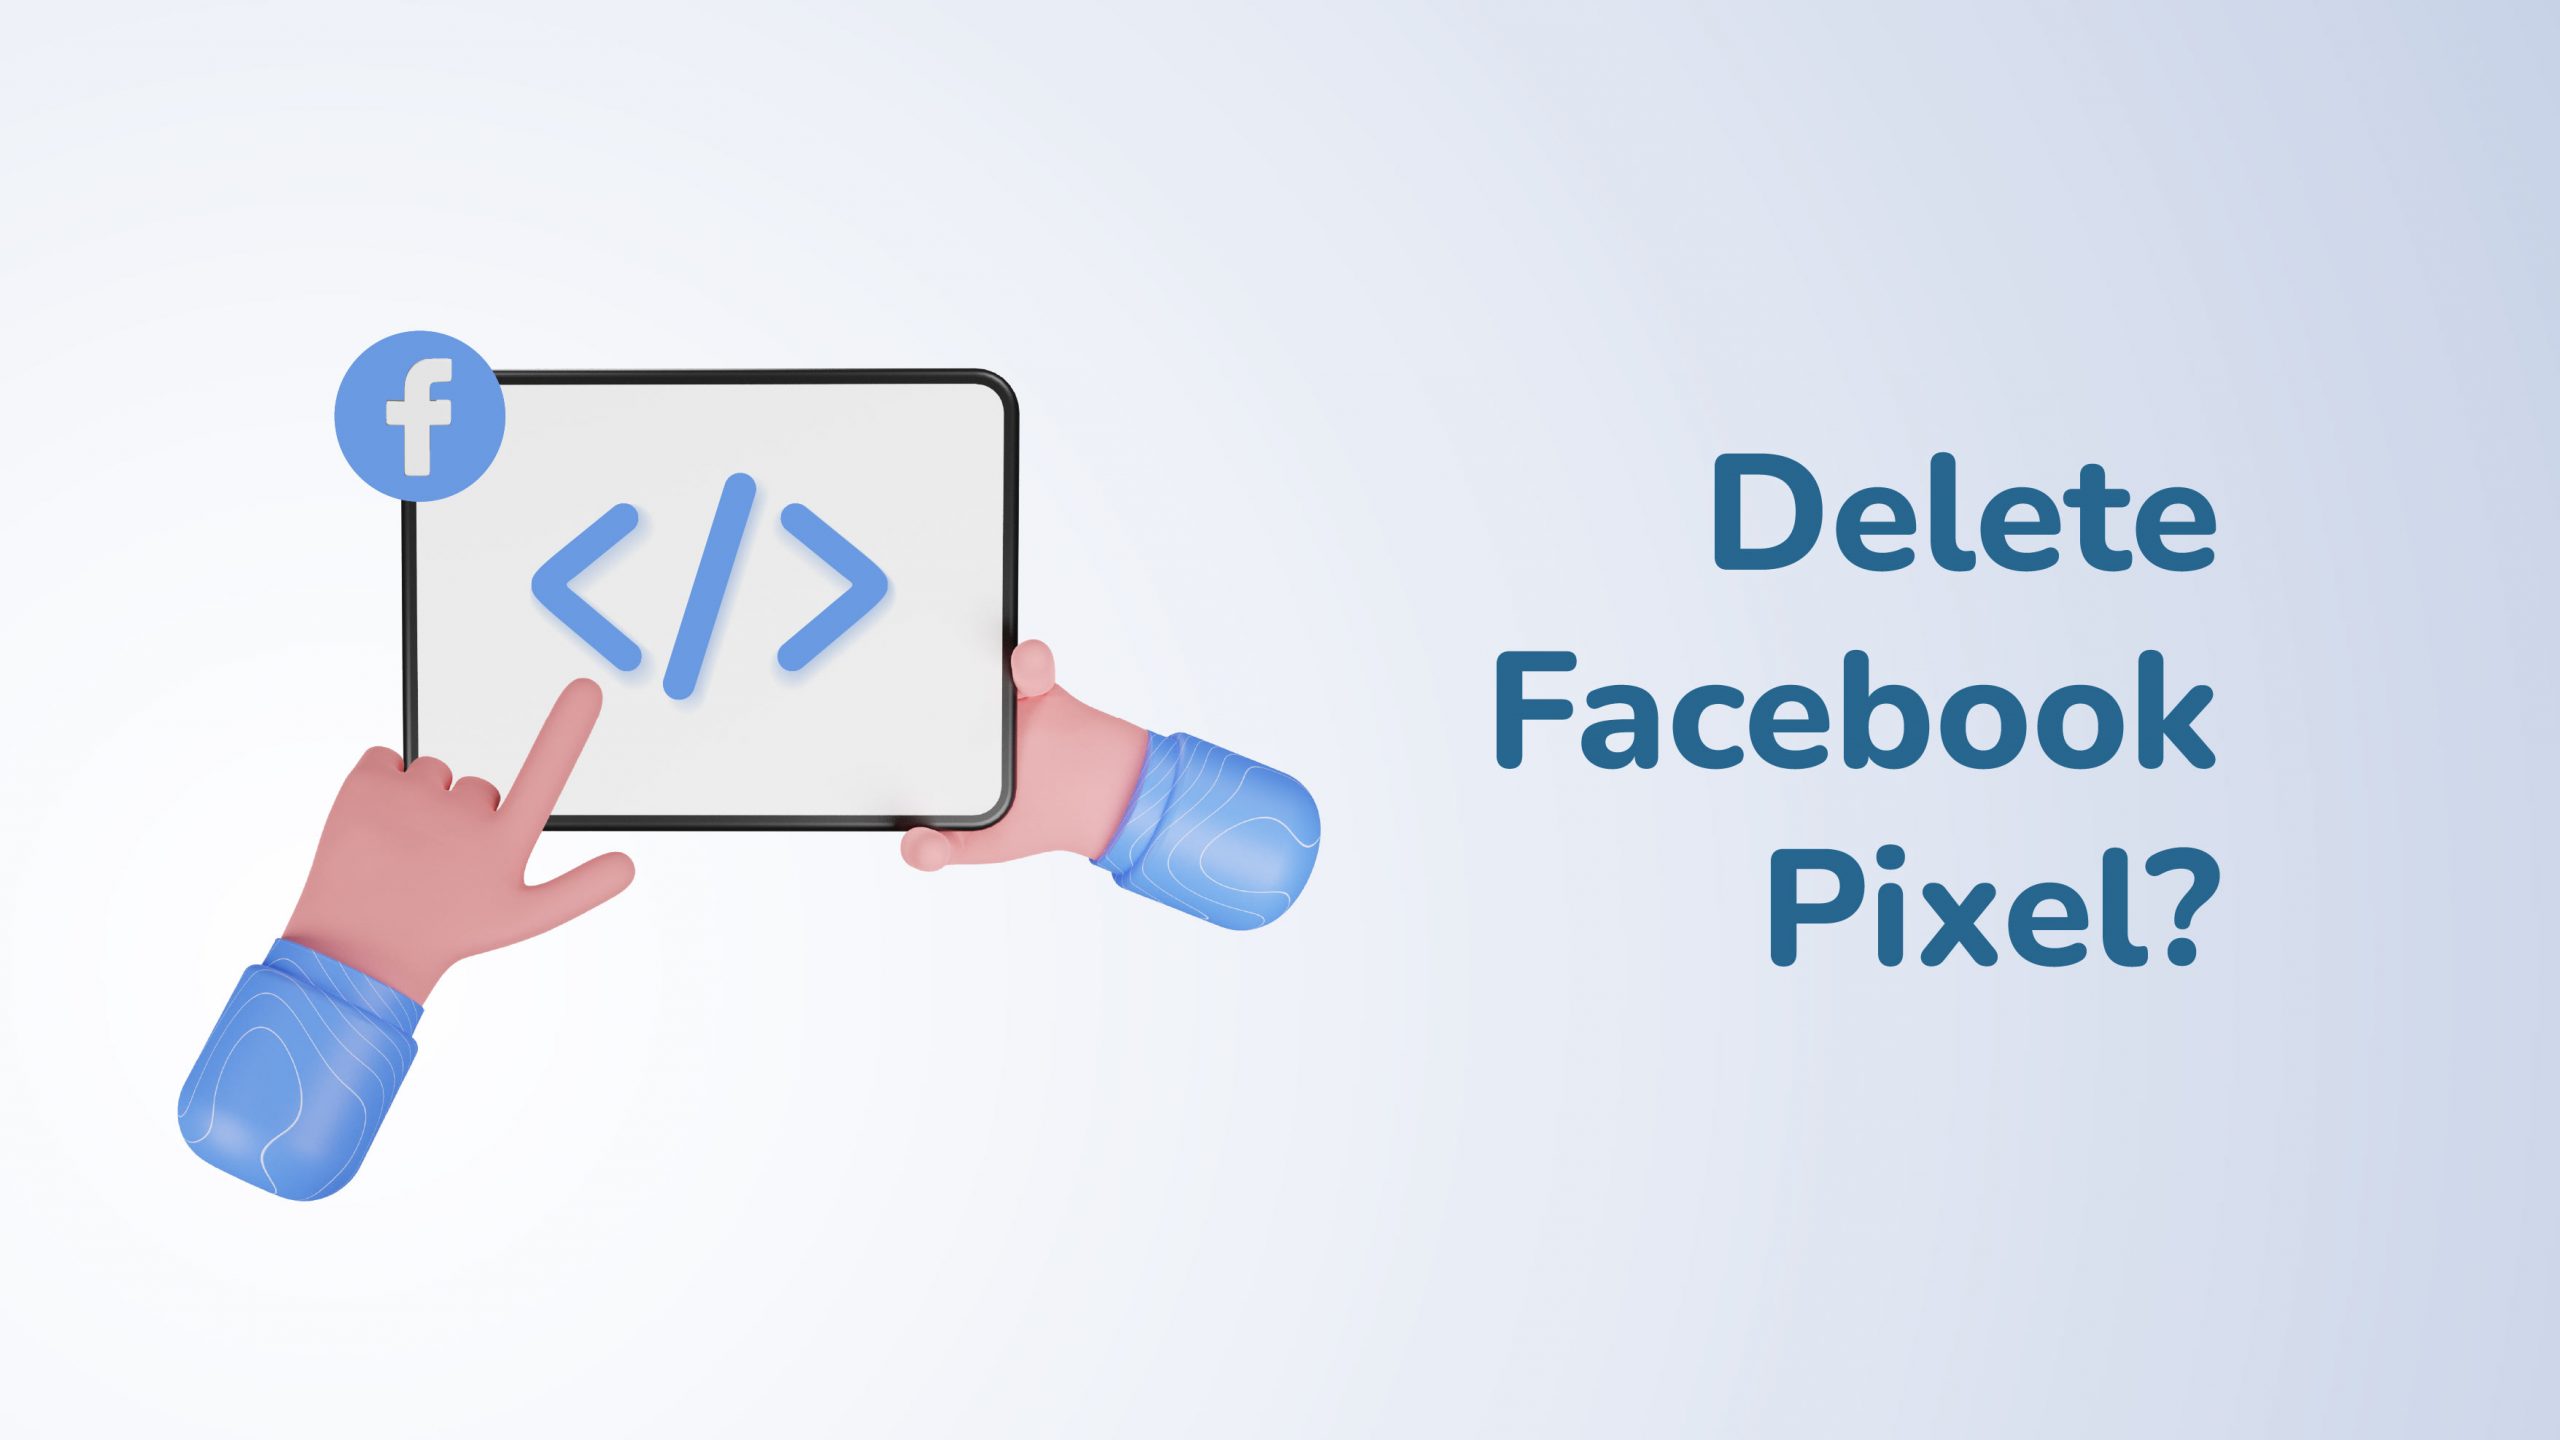 Delete Facebook Pixel